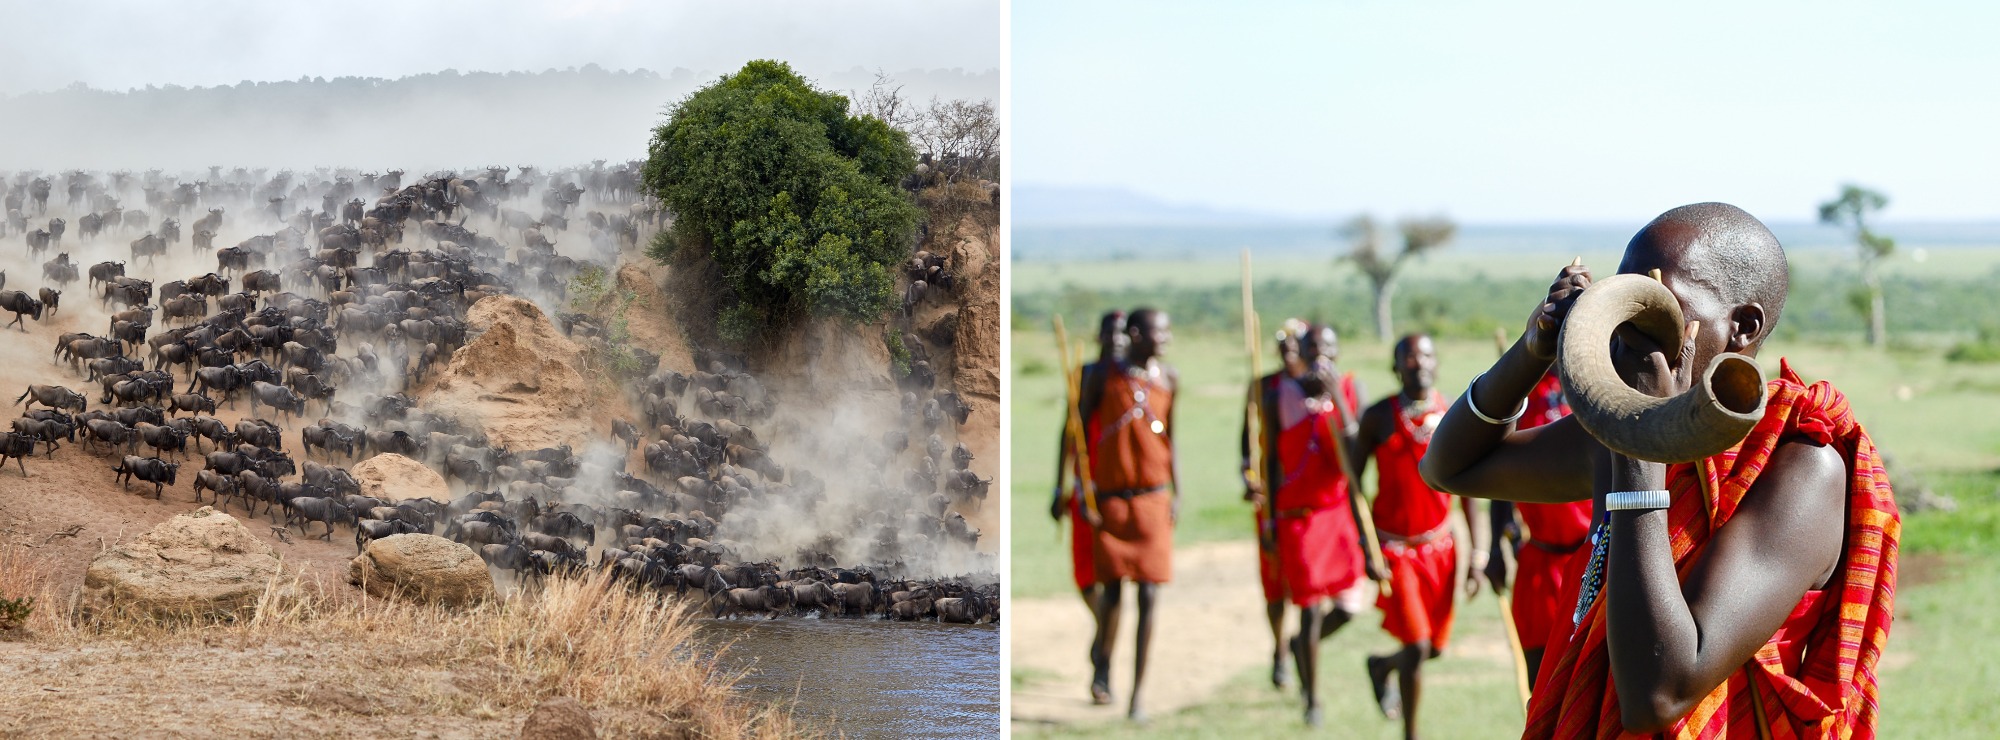 Masajų žemė – Masai Mara nacionalinis rezervatas